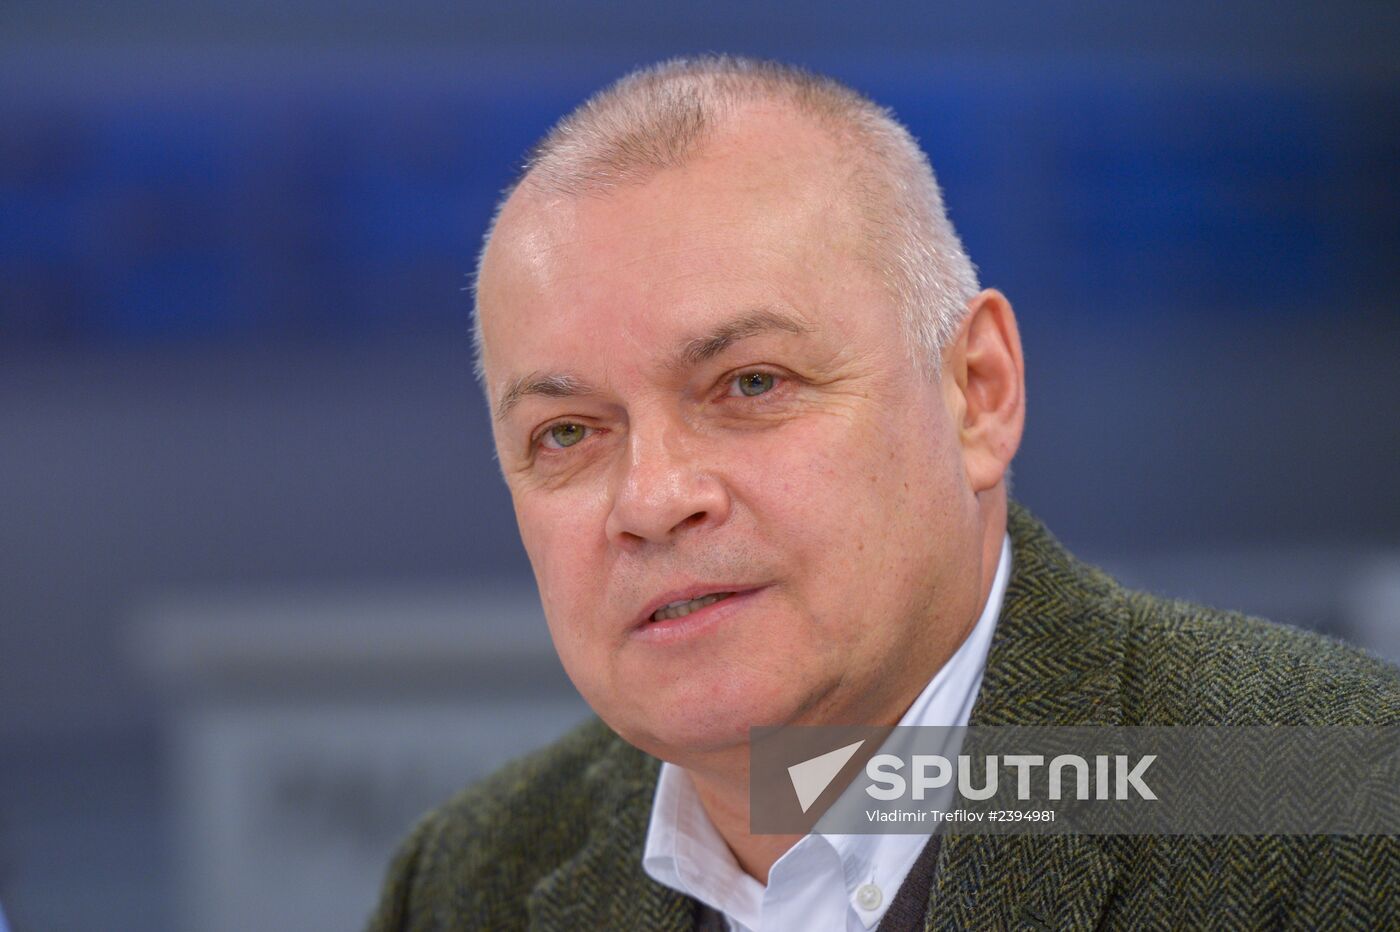 Dmitry Kiselev meets with veteran journalists